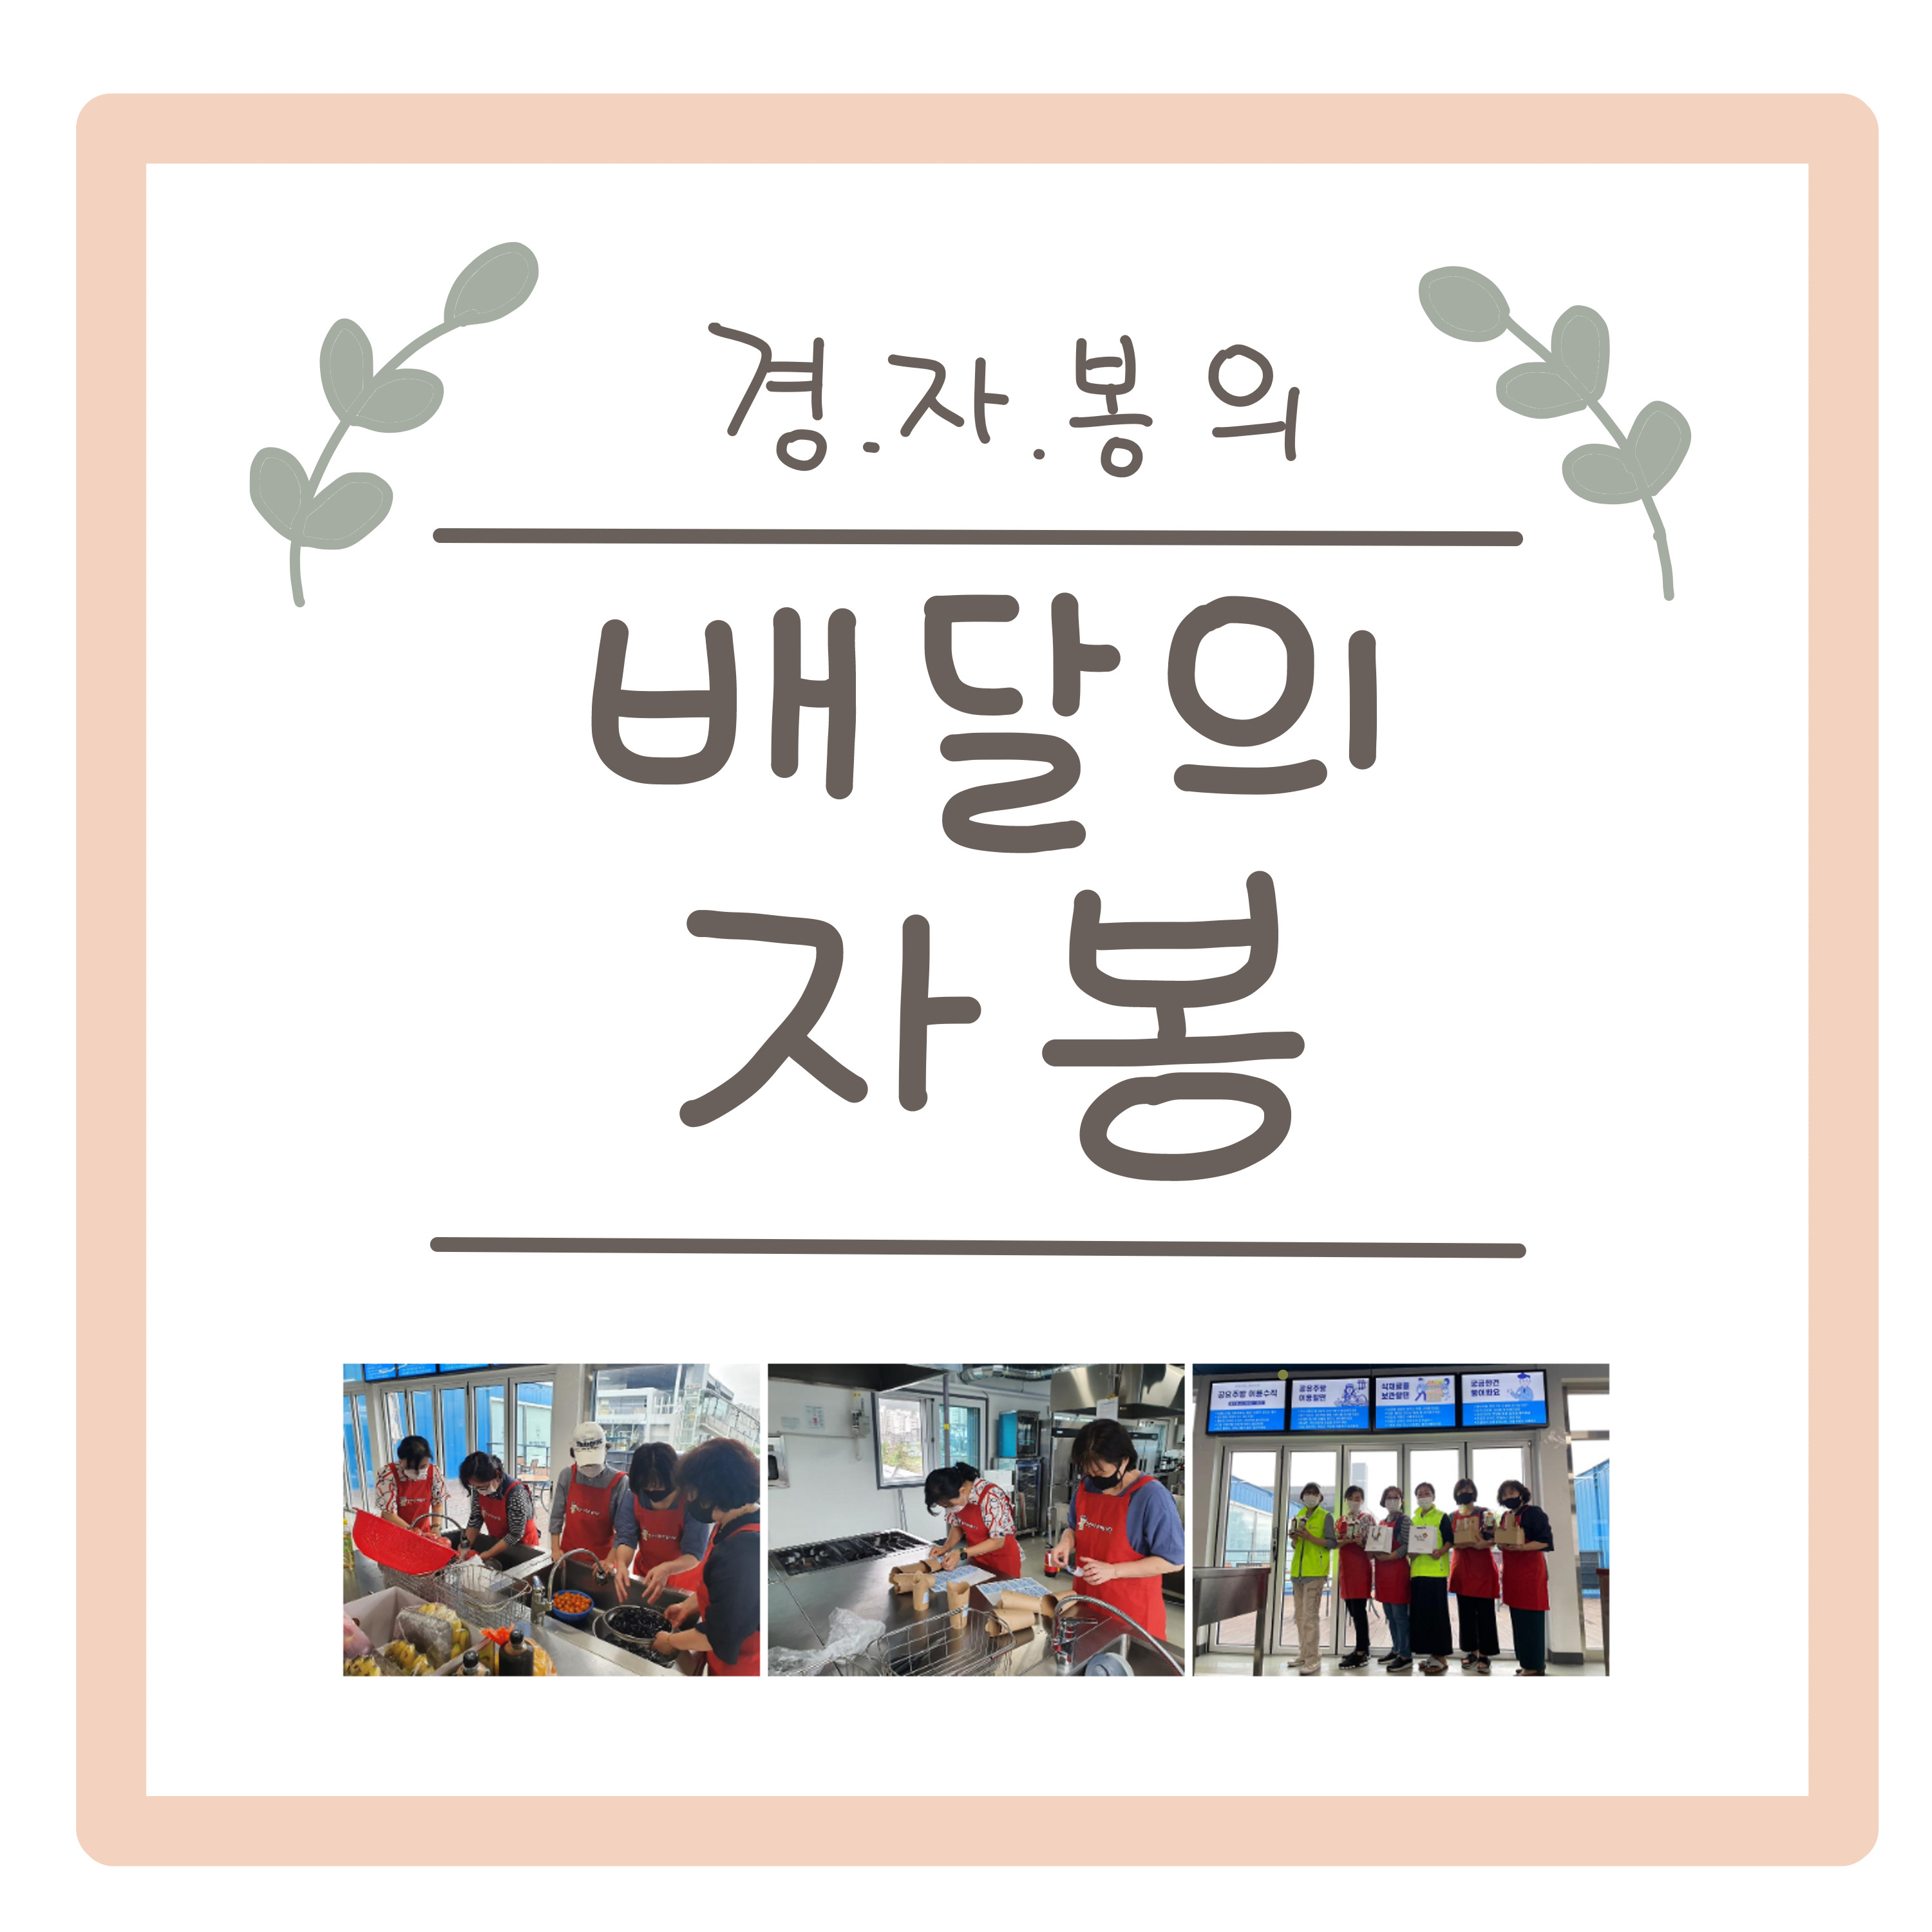 #2 방울(김영) 작가님과 함께하는  자원봉사센터의 발자취